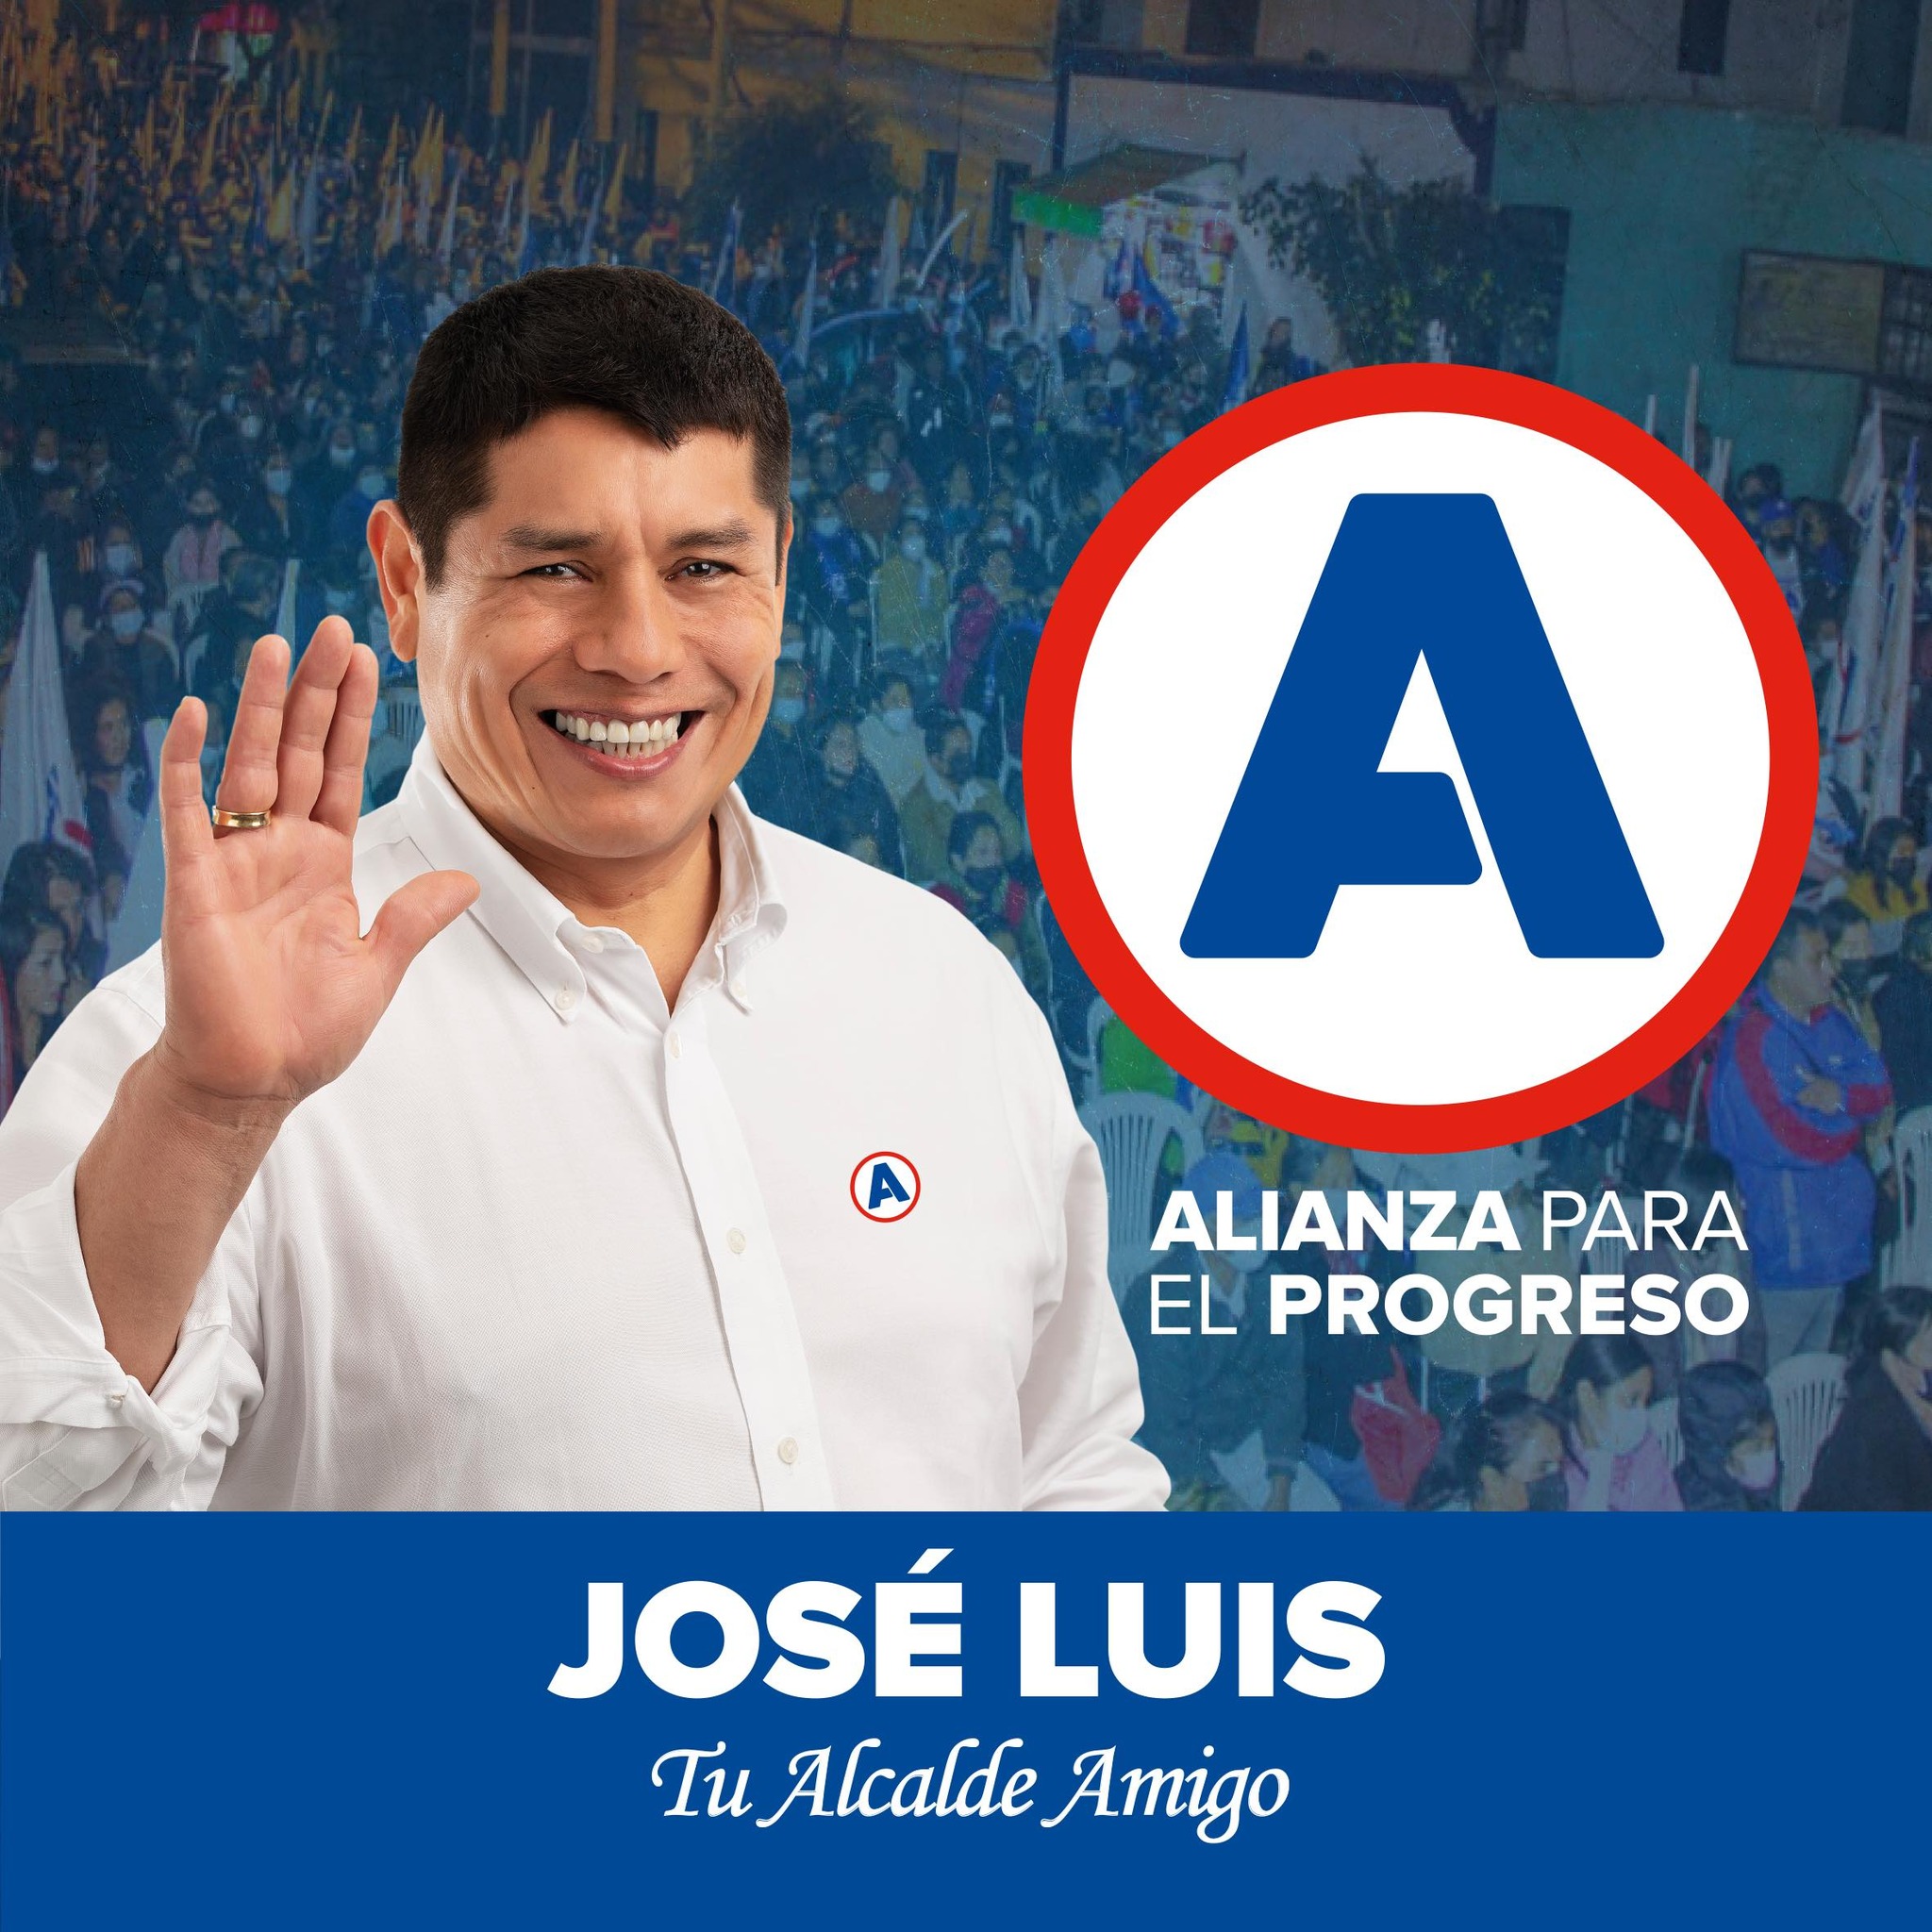 José Luis Huamani Gonzáles